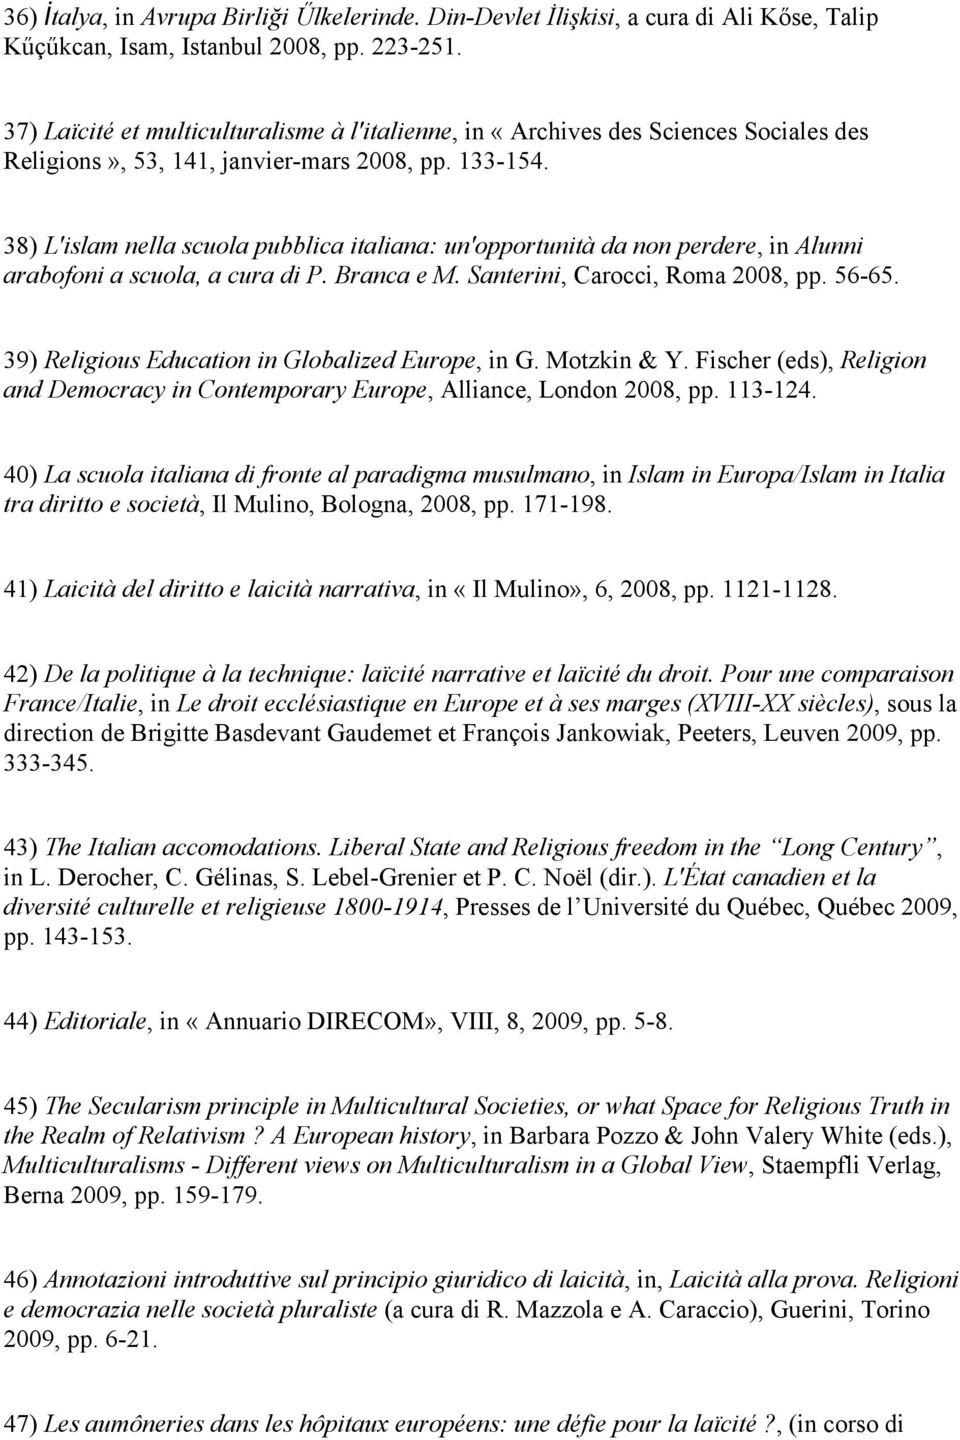 38) L'islam nella scuola pubblica italiana: un'opportunità da non perdere, in Alunni arabofoni a scuola, a cura di P. Branca e M. Santerini, Carocci, Roma 2008, pp. 56-65.